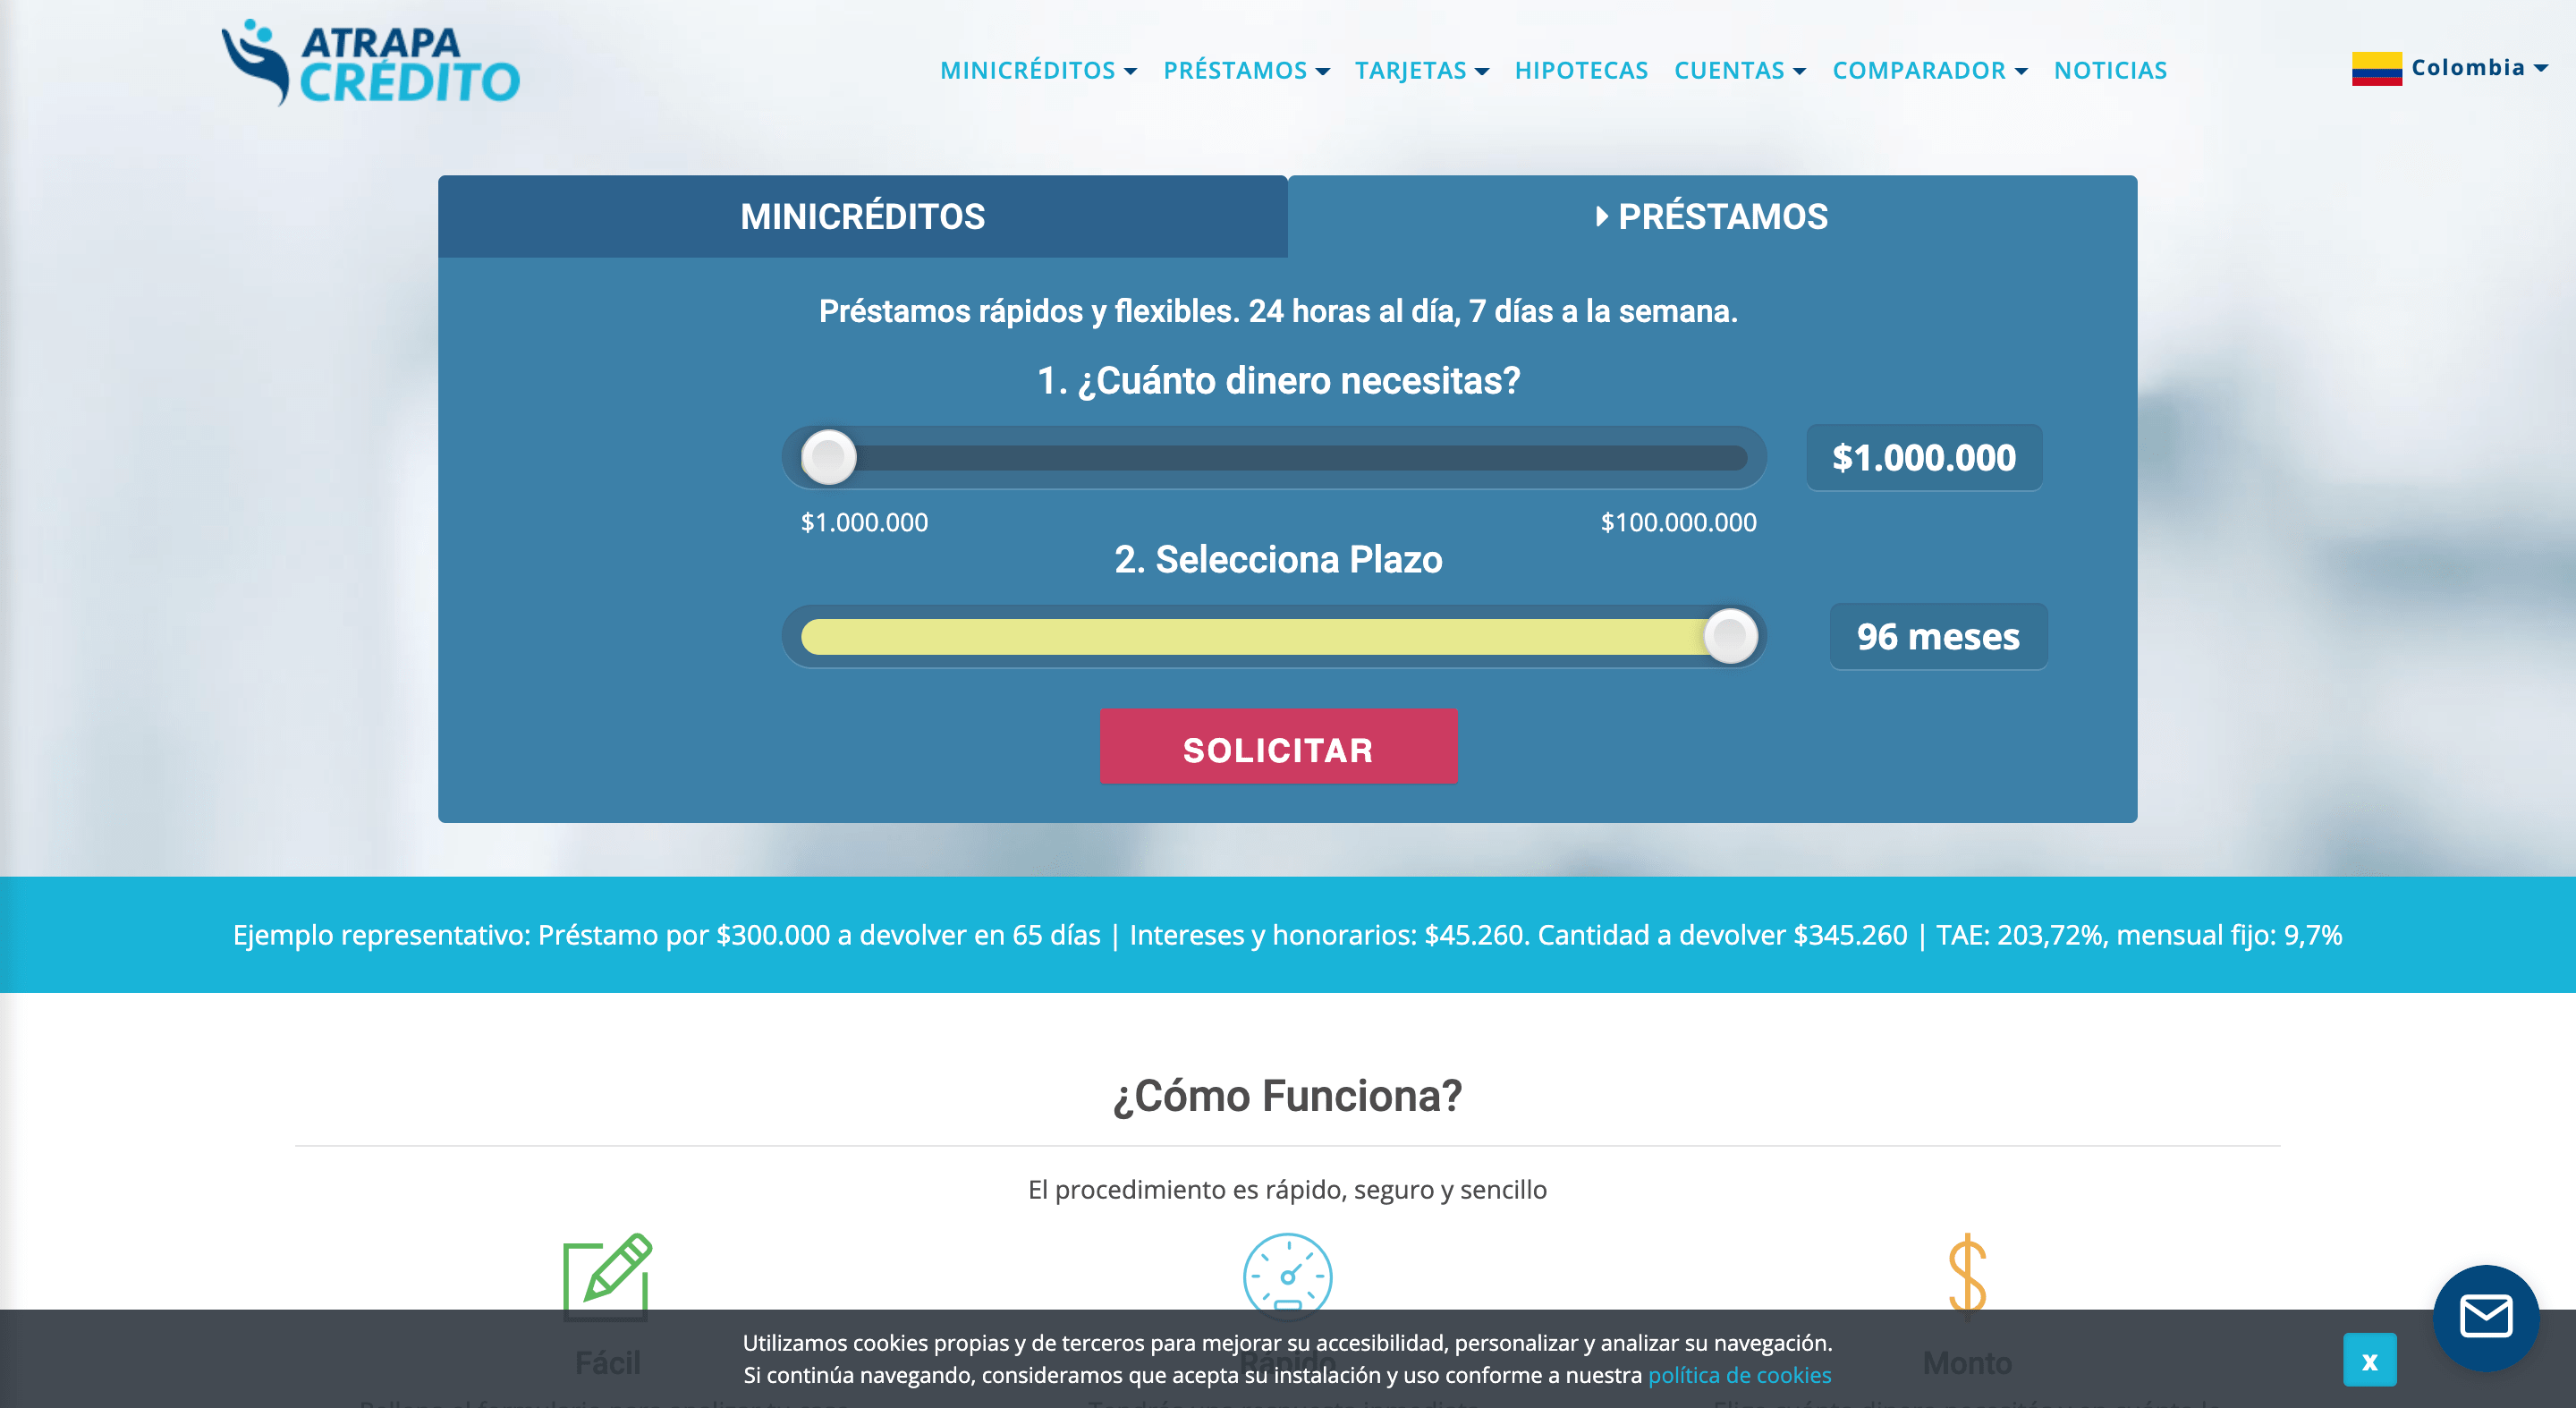 AtrapaCrédito - Crédito de hasta $100 000 000